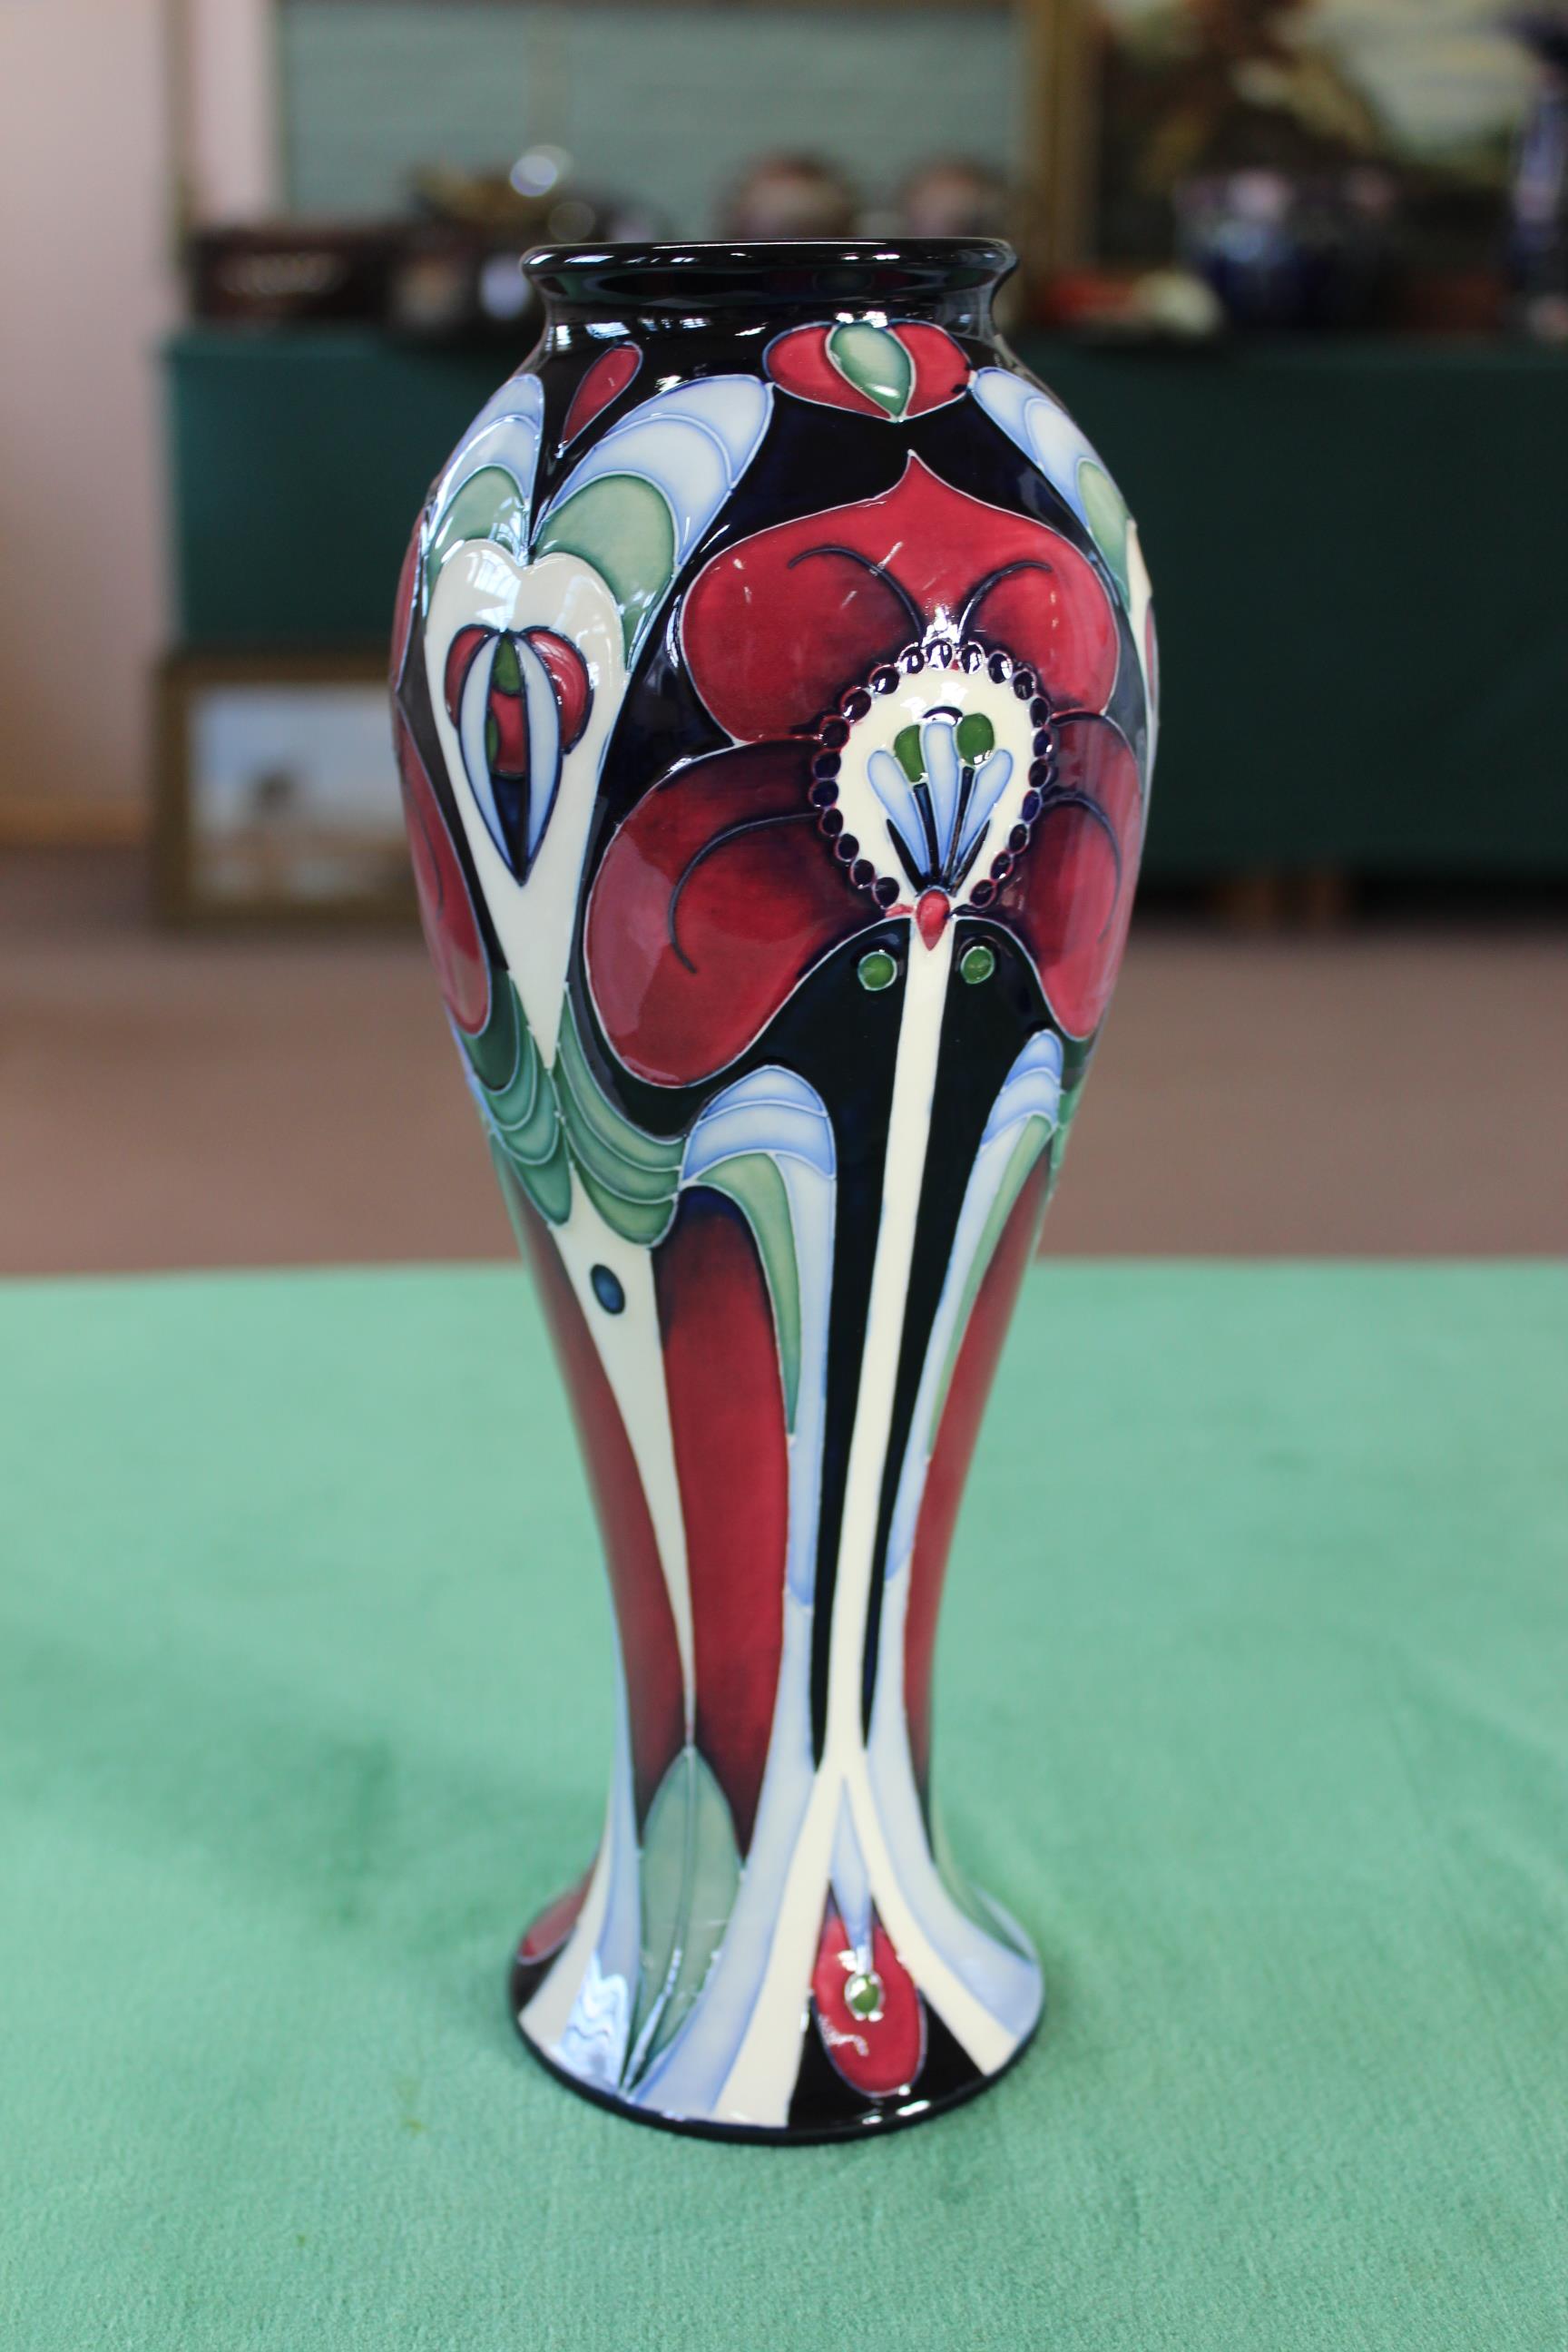 A Moorcroft 'Field of Hope' pattern vase, 2007 by Rachel Bishop, 11" high, - Image 2 of 3